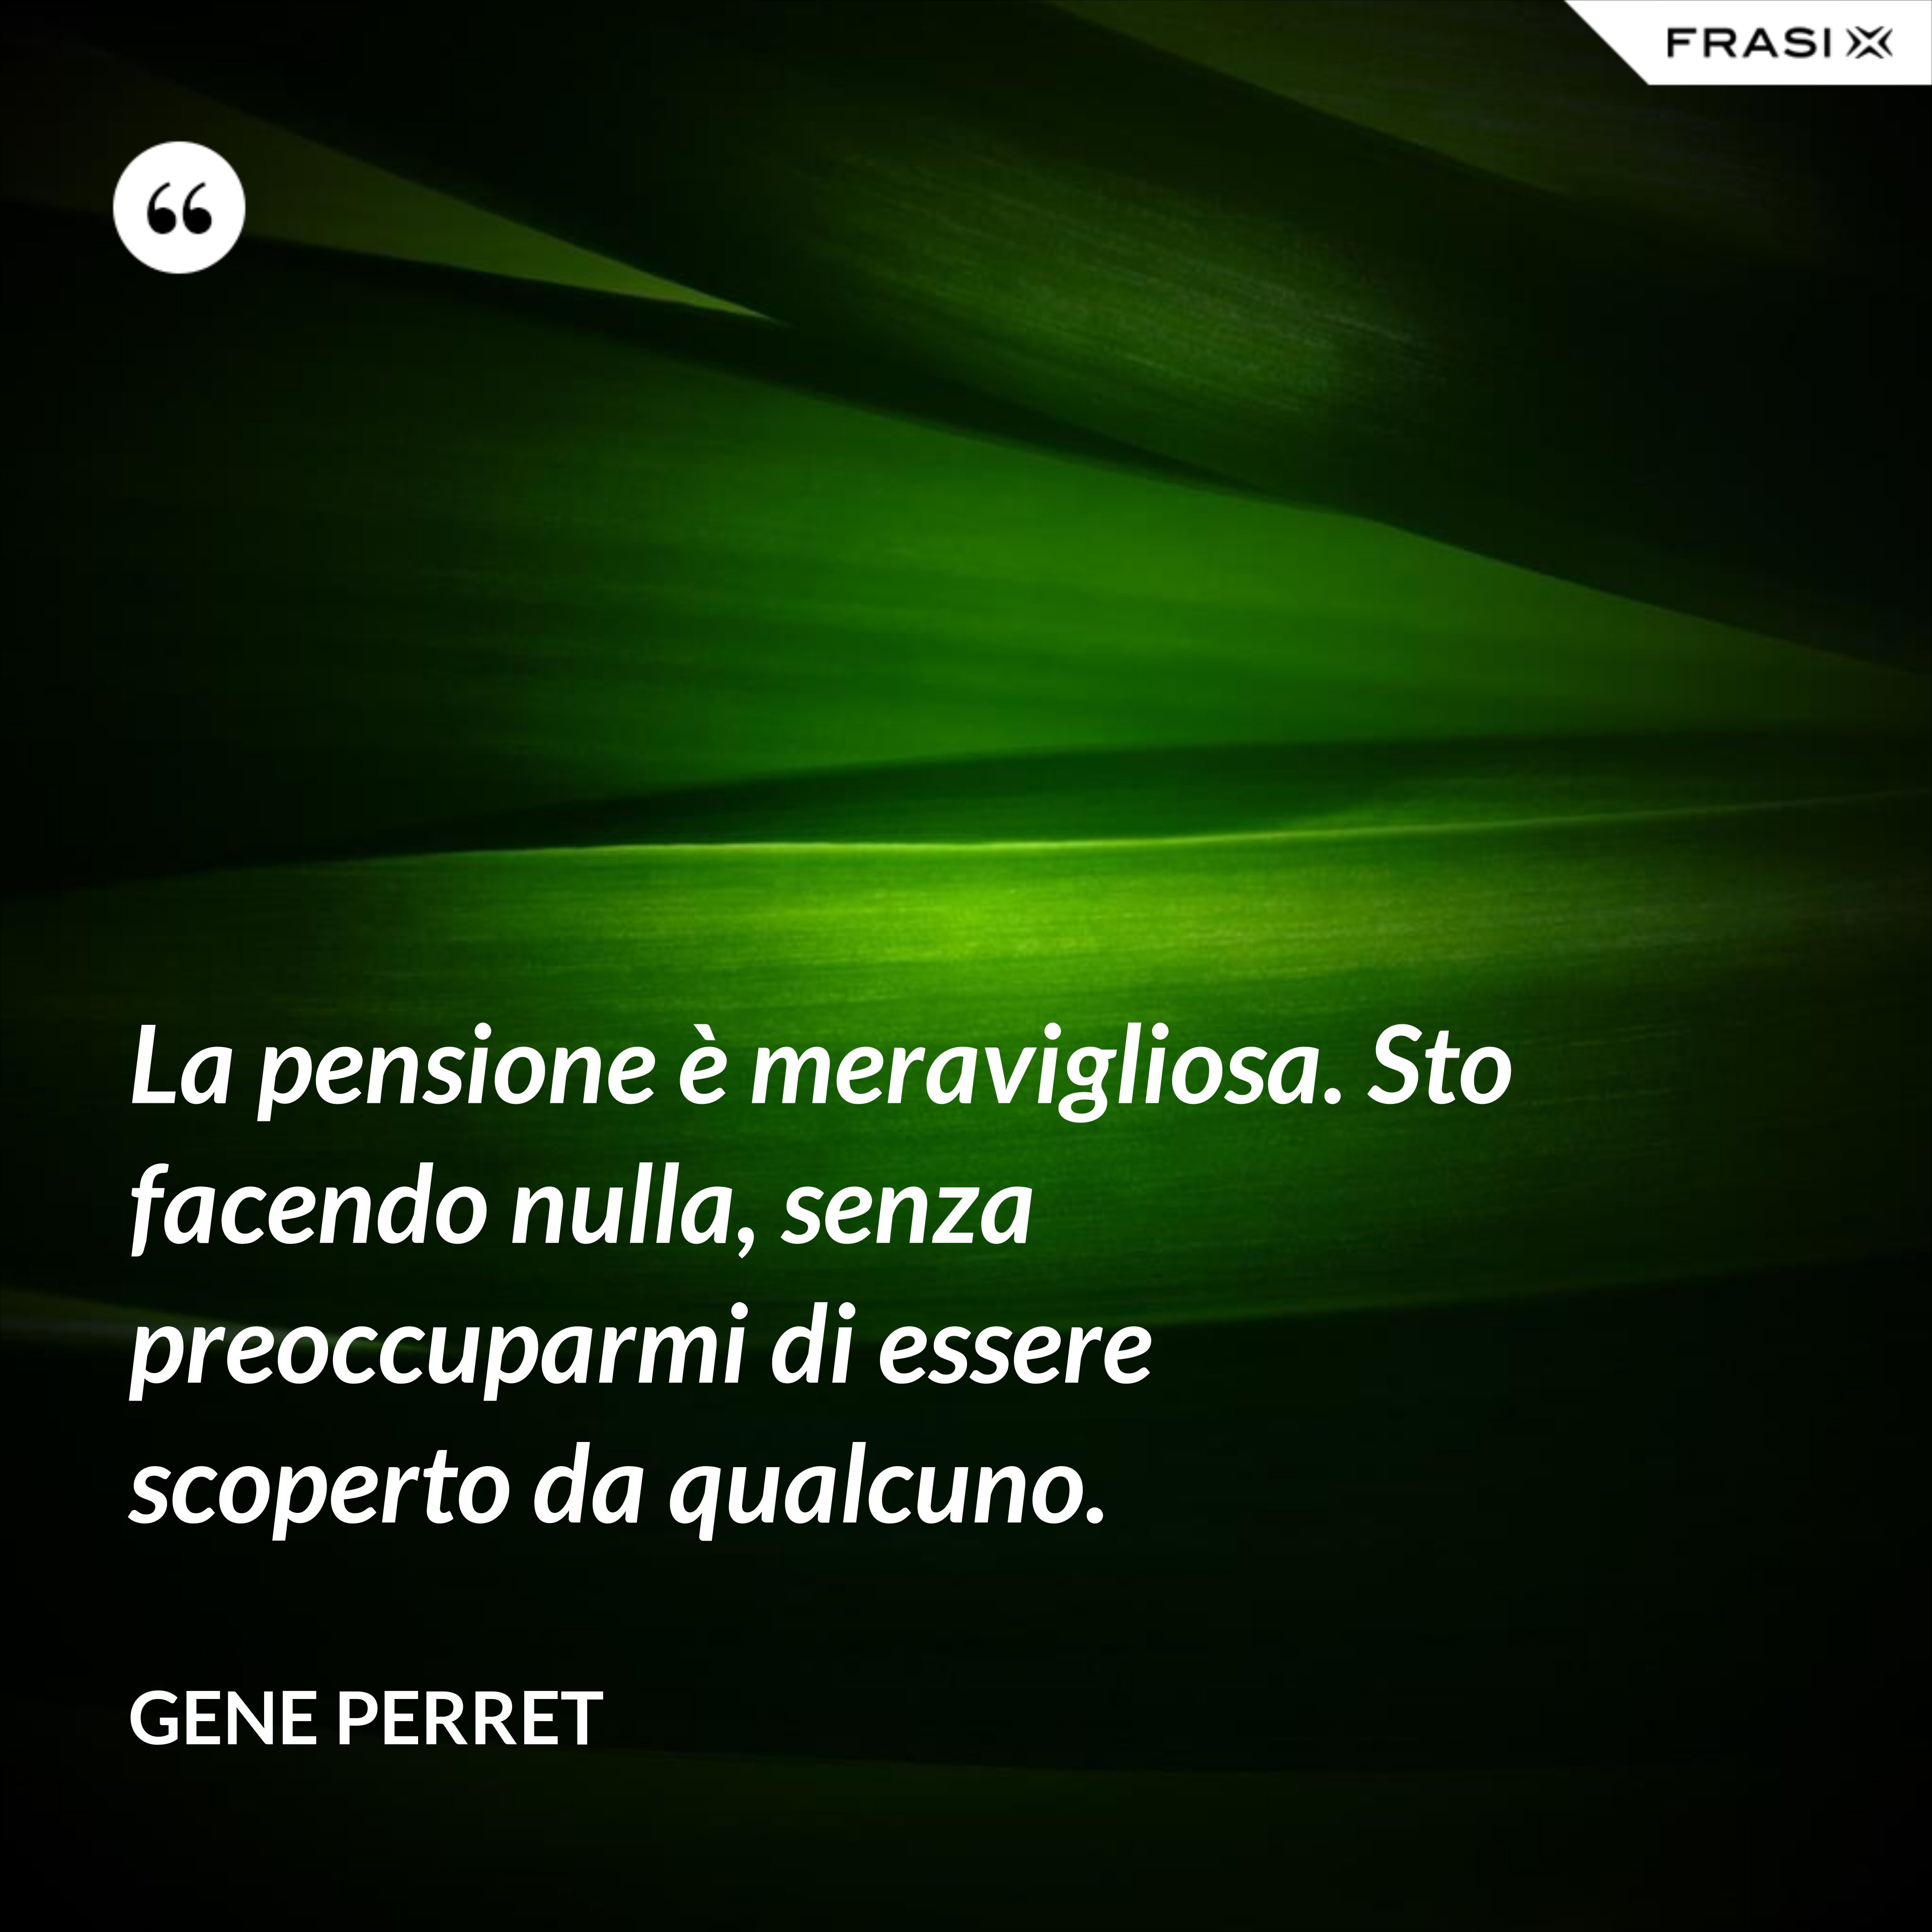 La pensione è meravigliosa. Sto facendo nulla, senza preoccuparmi di essere scoperto da qualcuno. - Gene Perret